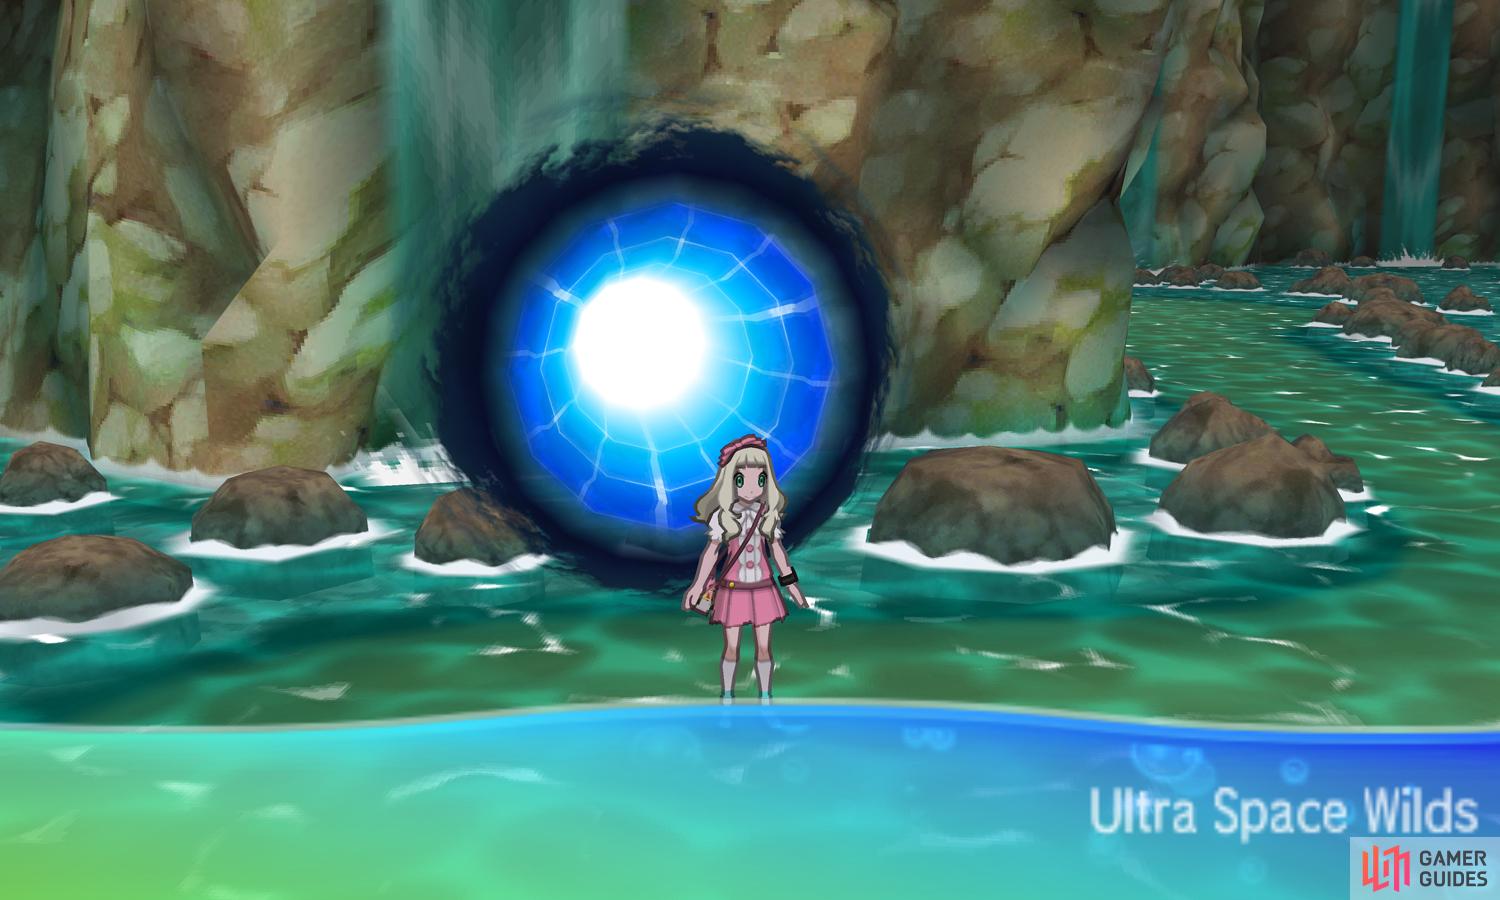 Ultra Beasts AREN'T Pokemon?! - Pokemon Ultra Sun and Ultra Moon